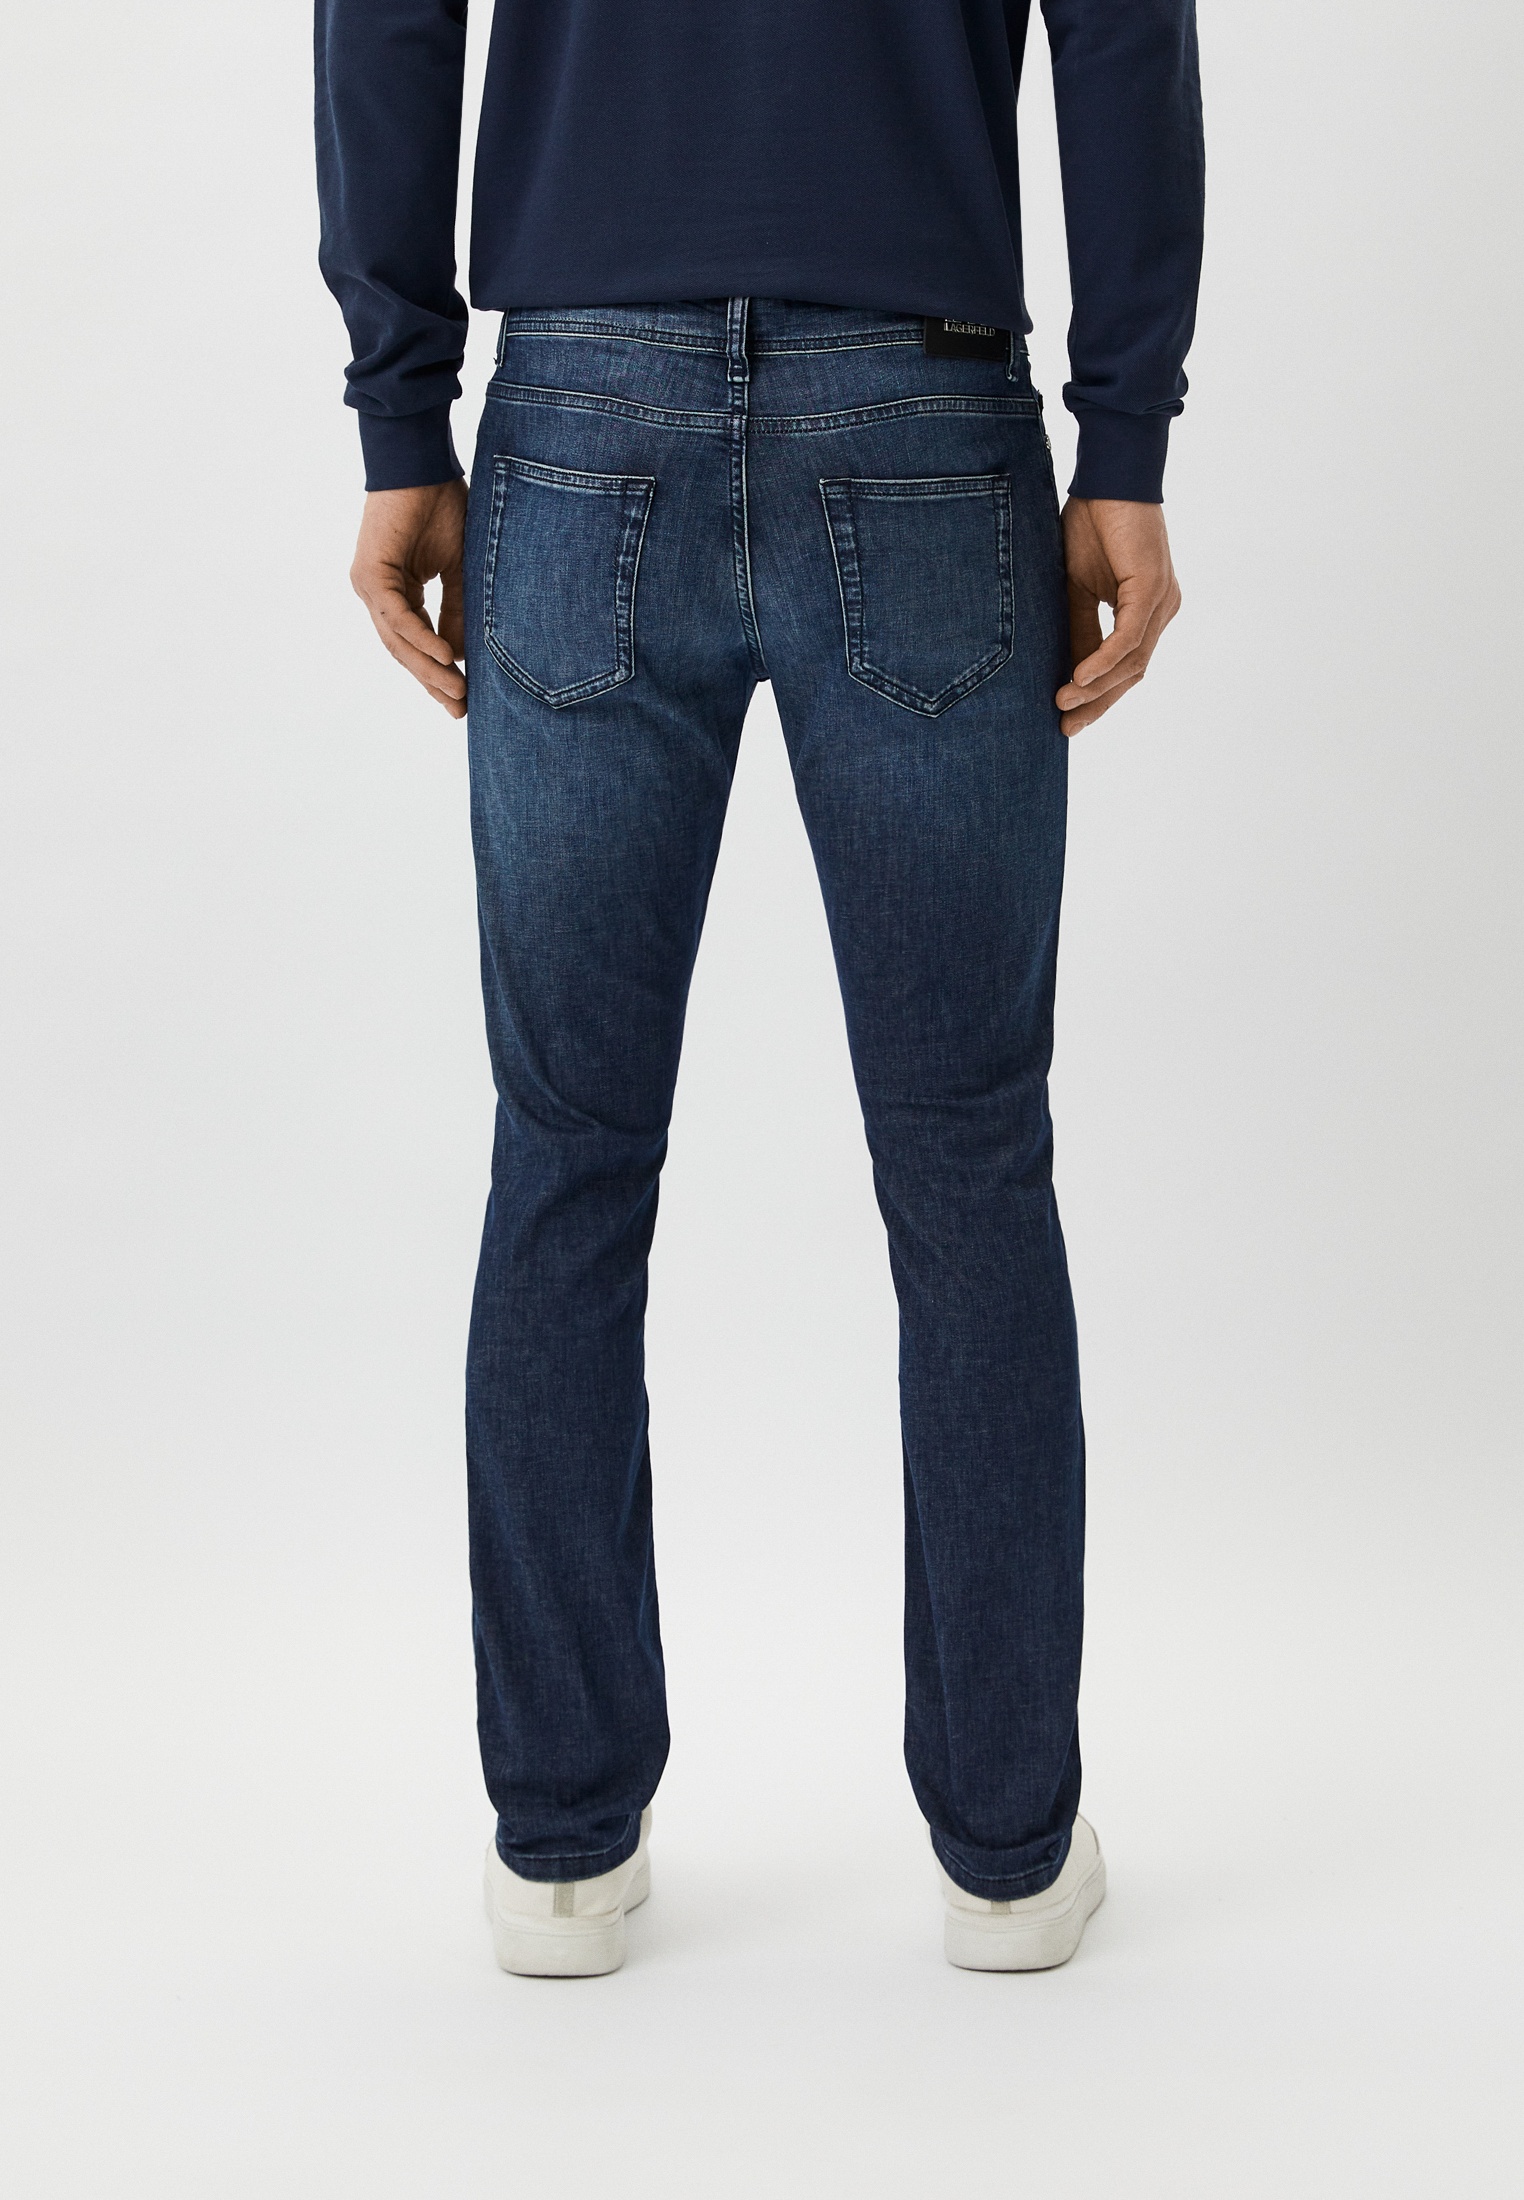 Мужские зауженные джинсы Karl Lagerfeld (Карл Лагерфельд) 265840-542833: изображение 3